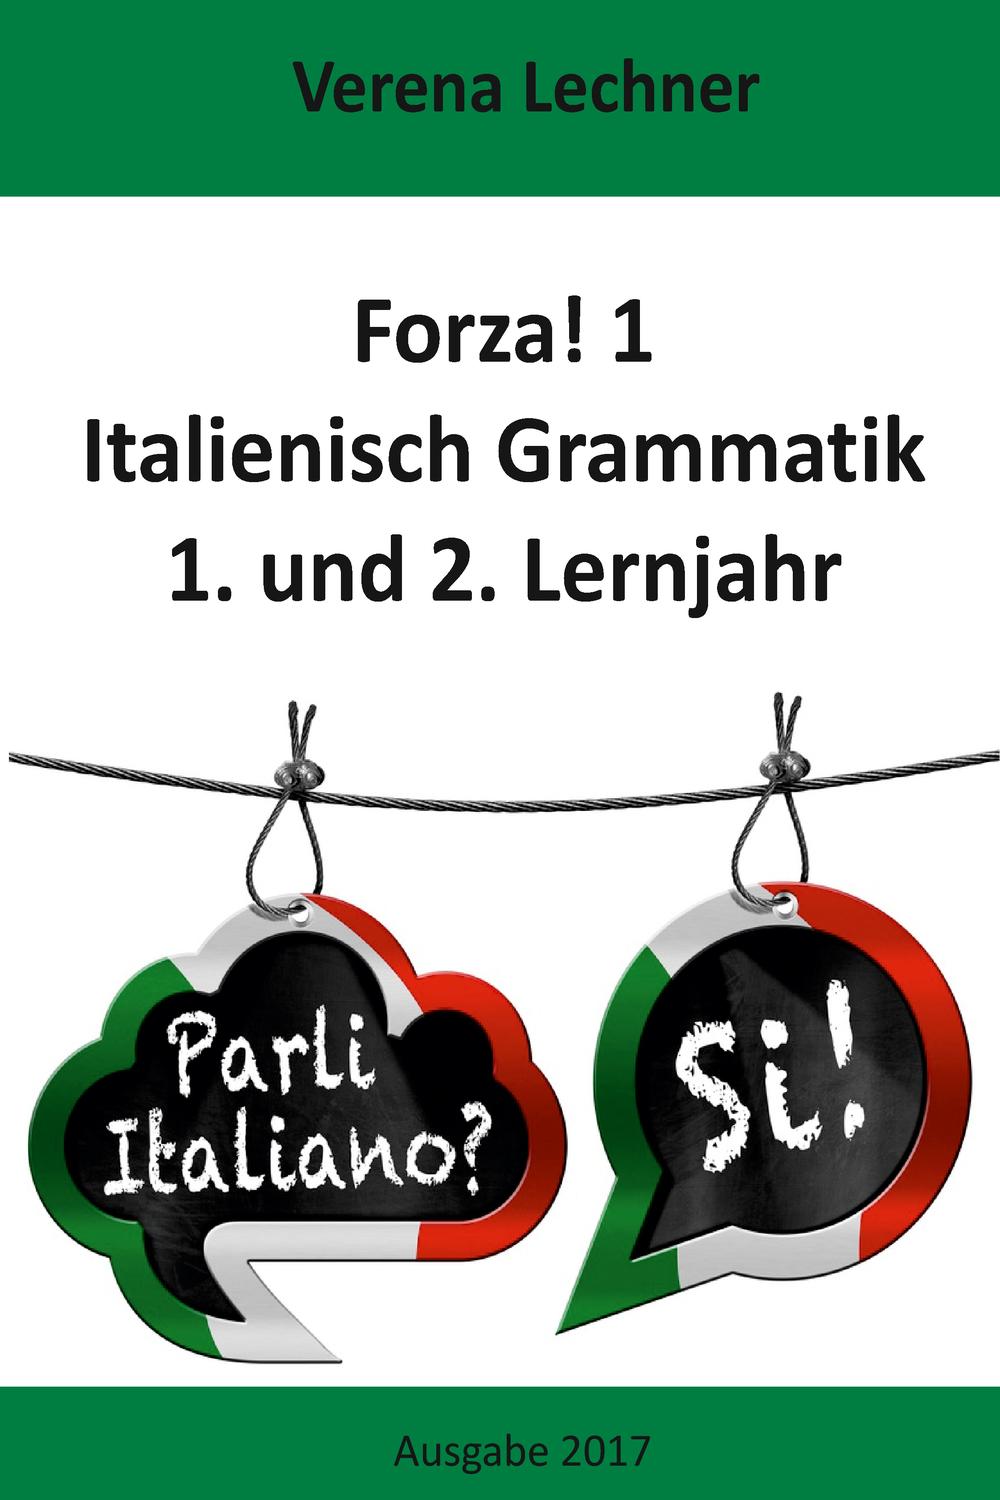 Forza! 1 Italienisch Grammatik - Verena Lechner,,